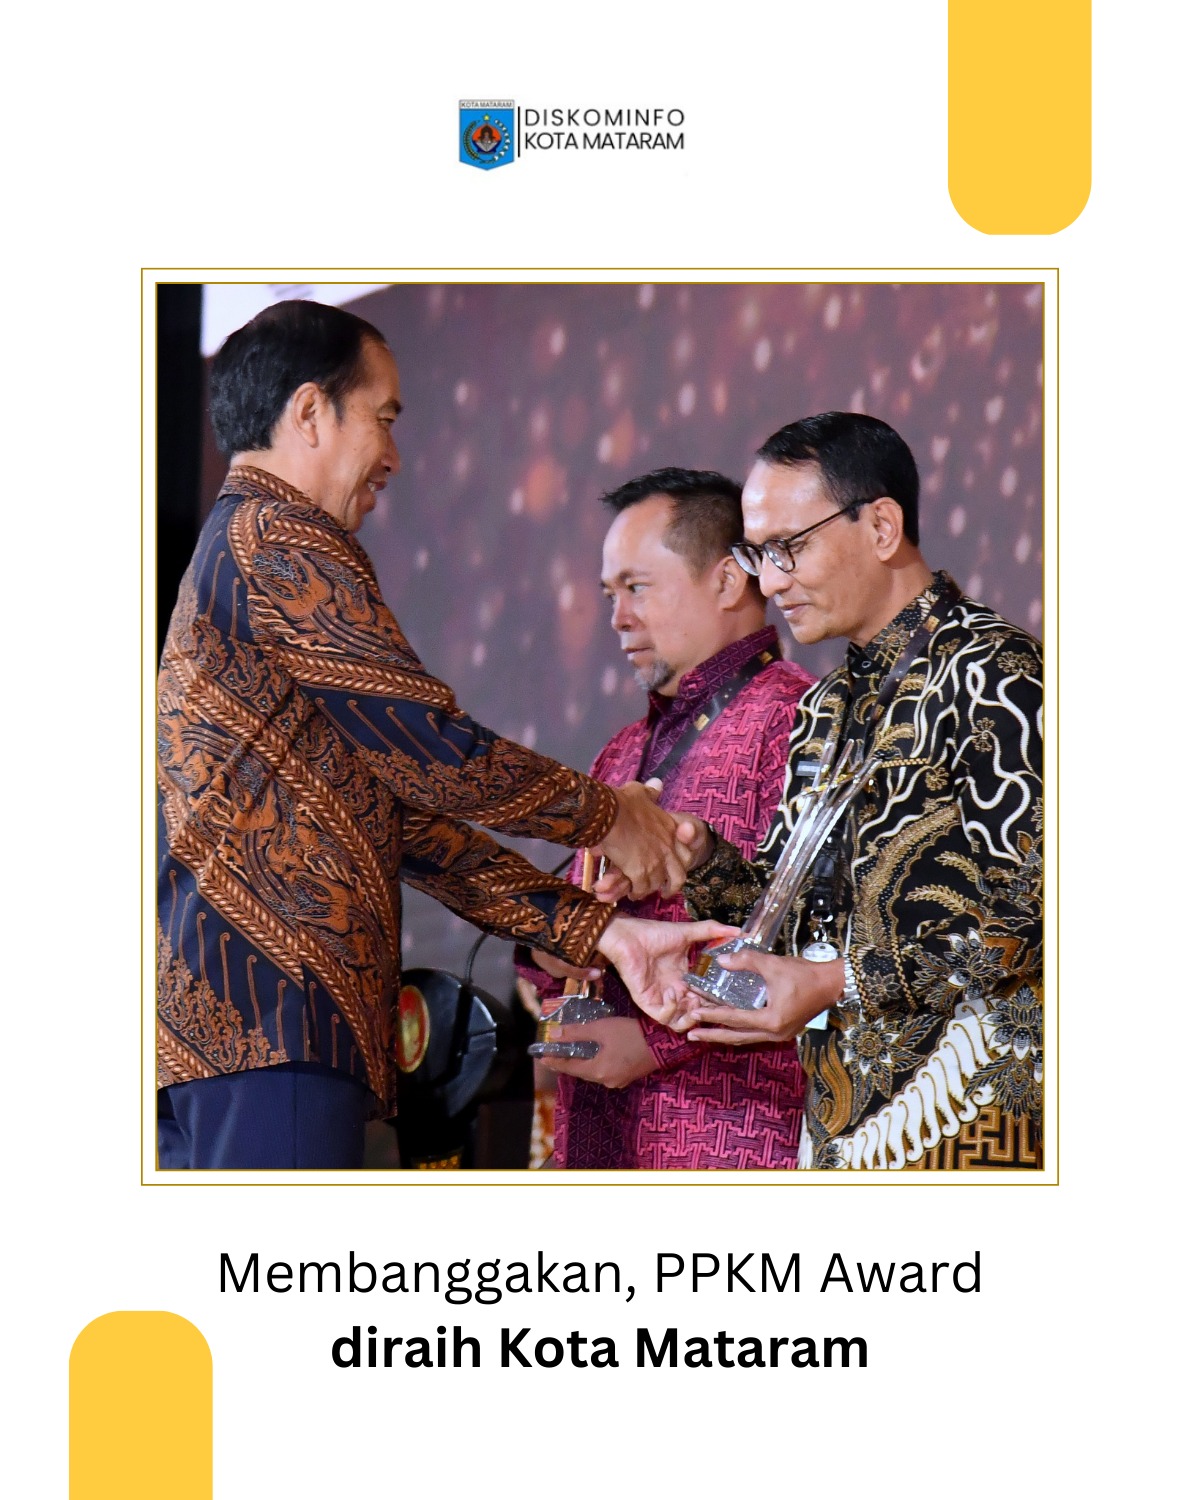 Membanggakan, PPKM Award diraih Kota Mataram